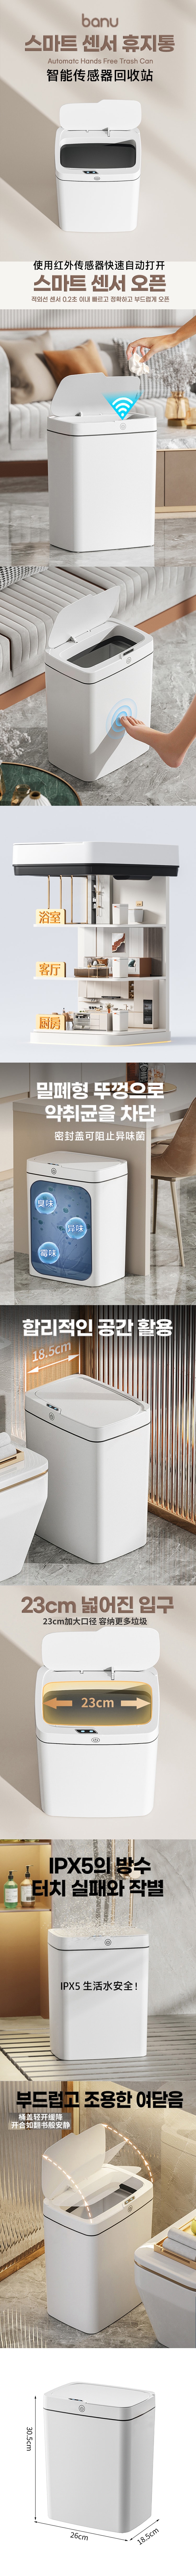 韓國 BANU 智慧感光元件垃圾桶 ( 4 POUND)